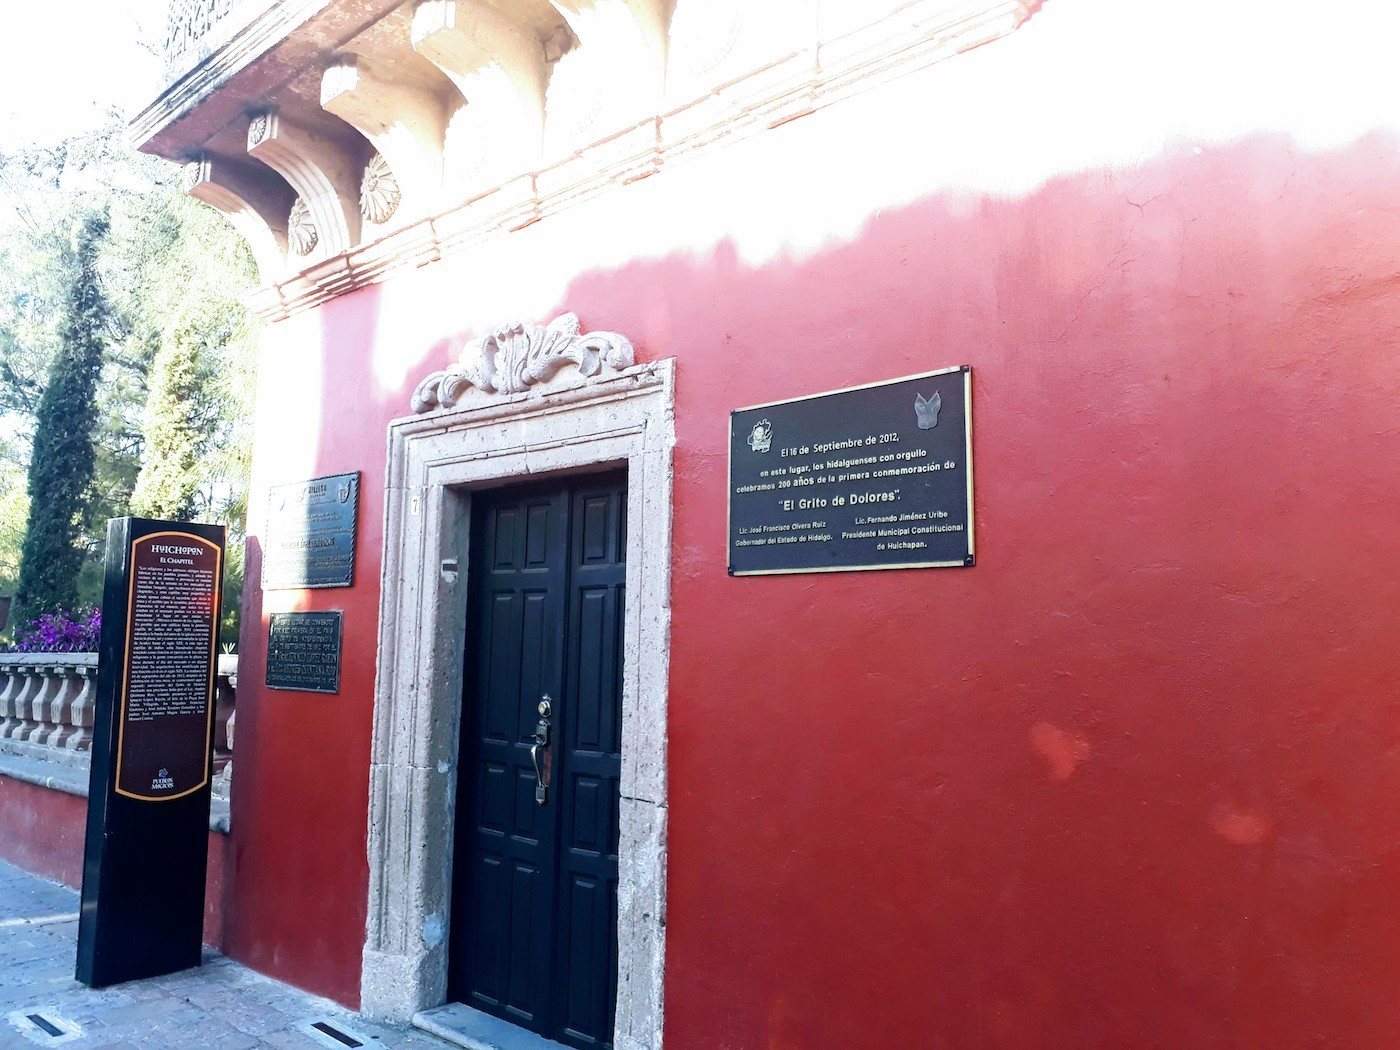 El chapitel en Huichapan, Hidalgo, Grito de Dolores